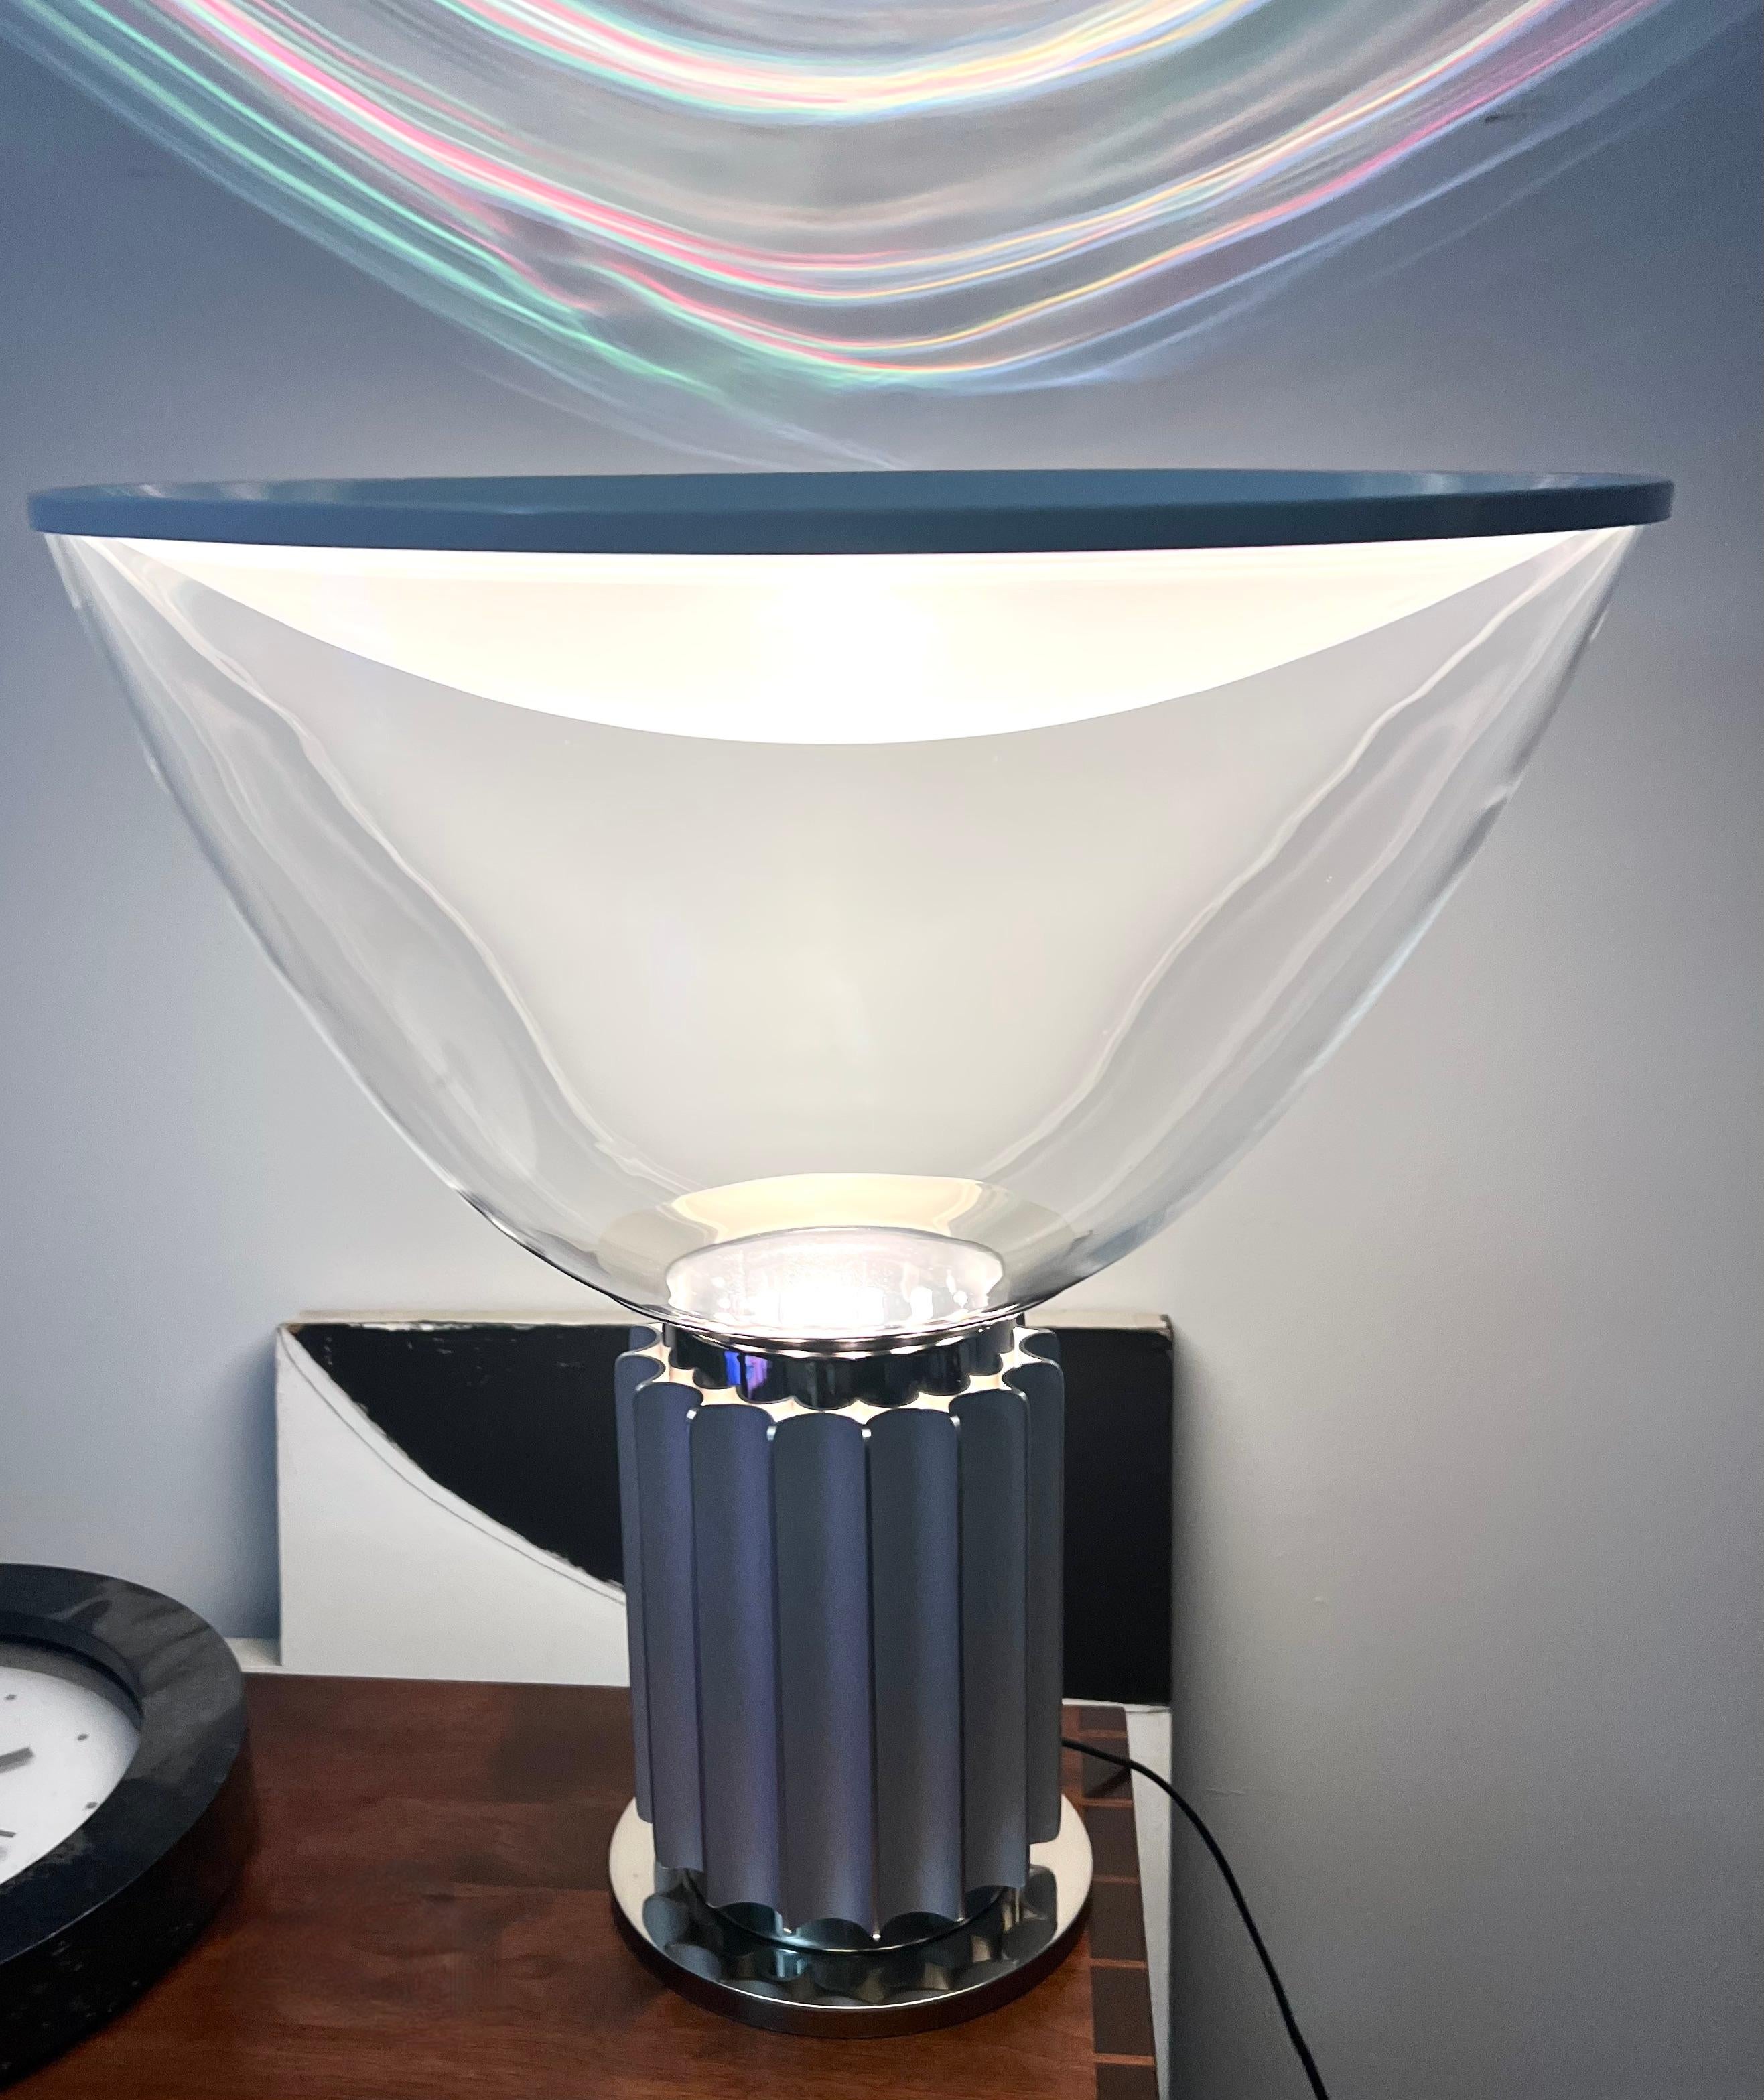 Lampe de table italienne moderne 'Taccia' conçue par Achille Castiglioni pour Flos dans les années 1960. La base en aluminium et en métal poli est surmontée d'un abat-jour en forme de bol en verre inversé et d'un abat-jour en aluminium blanc. Label